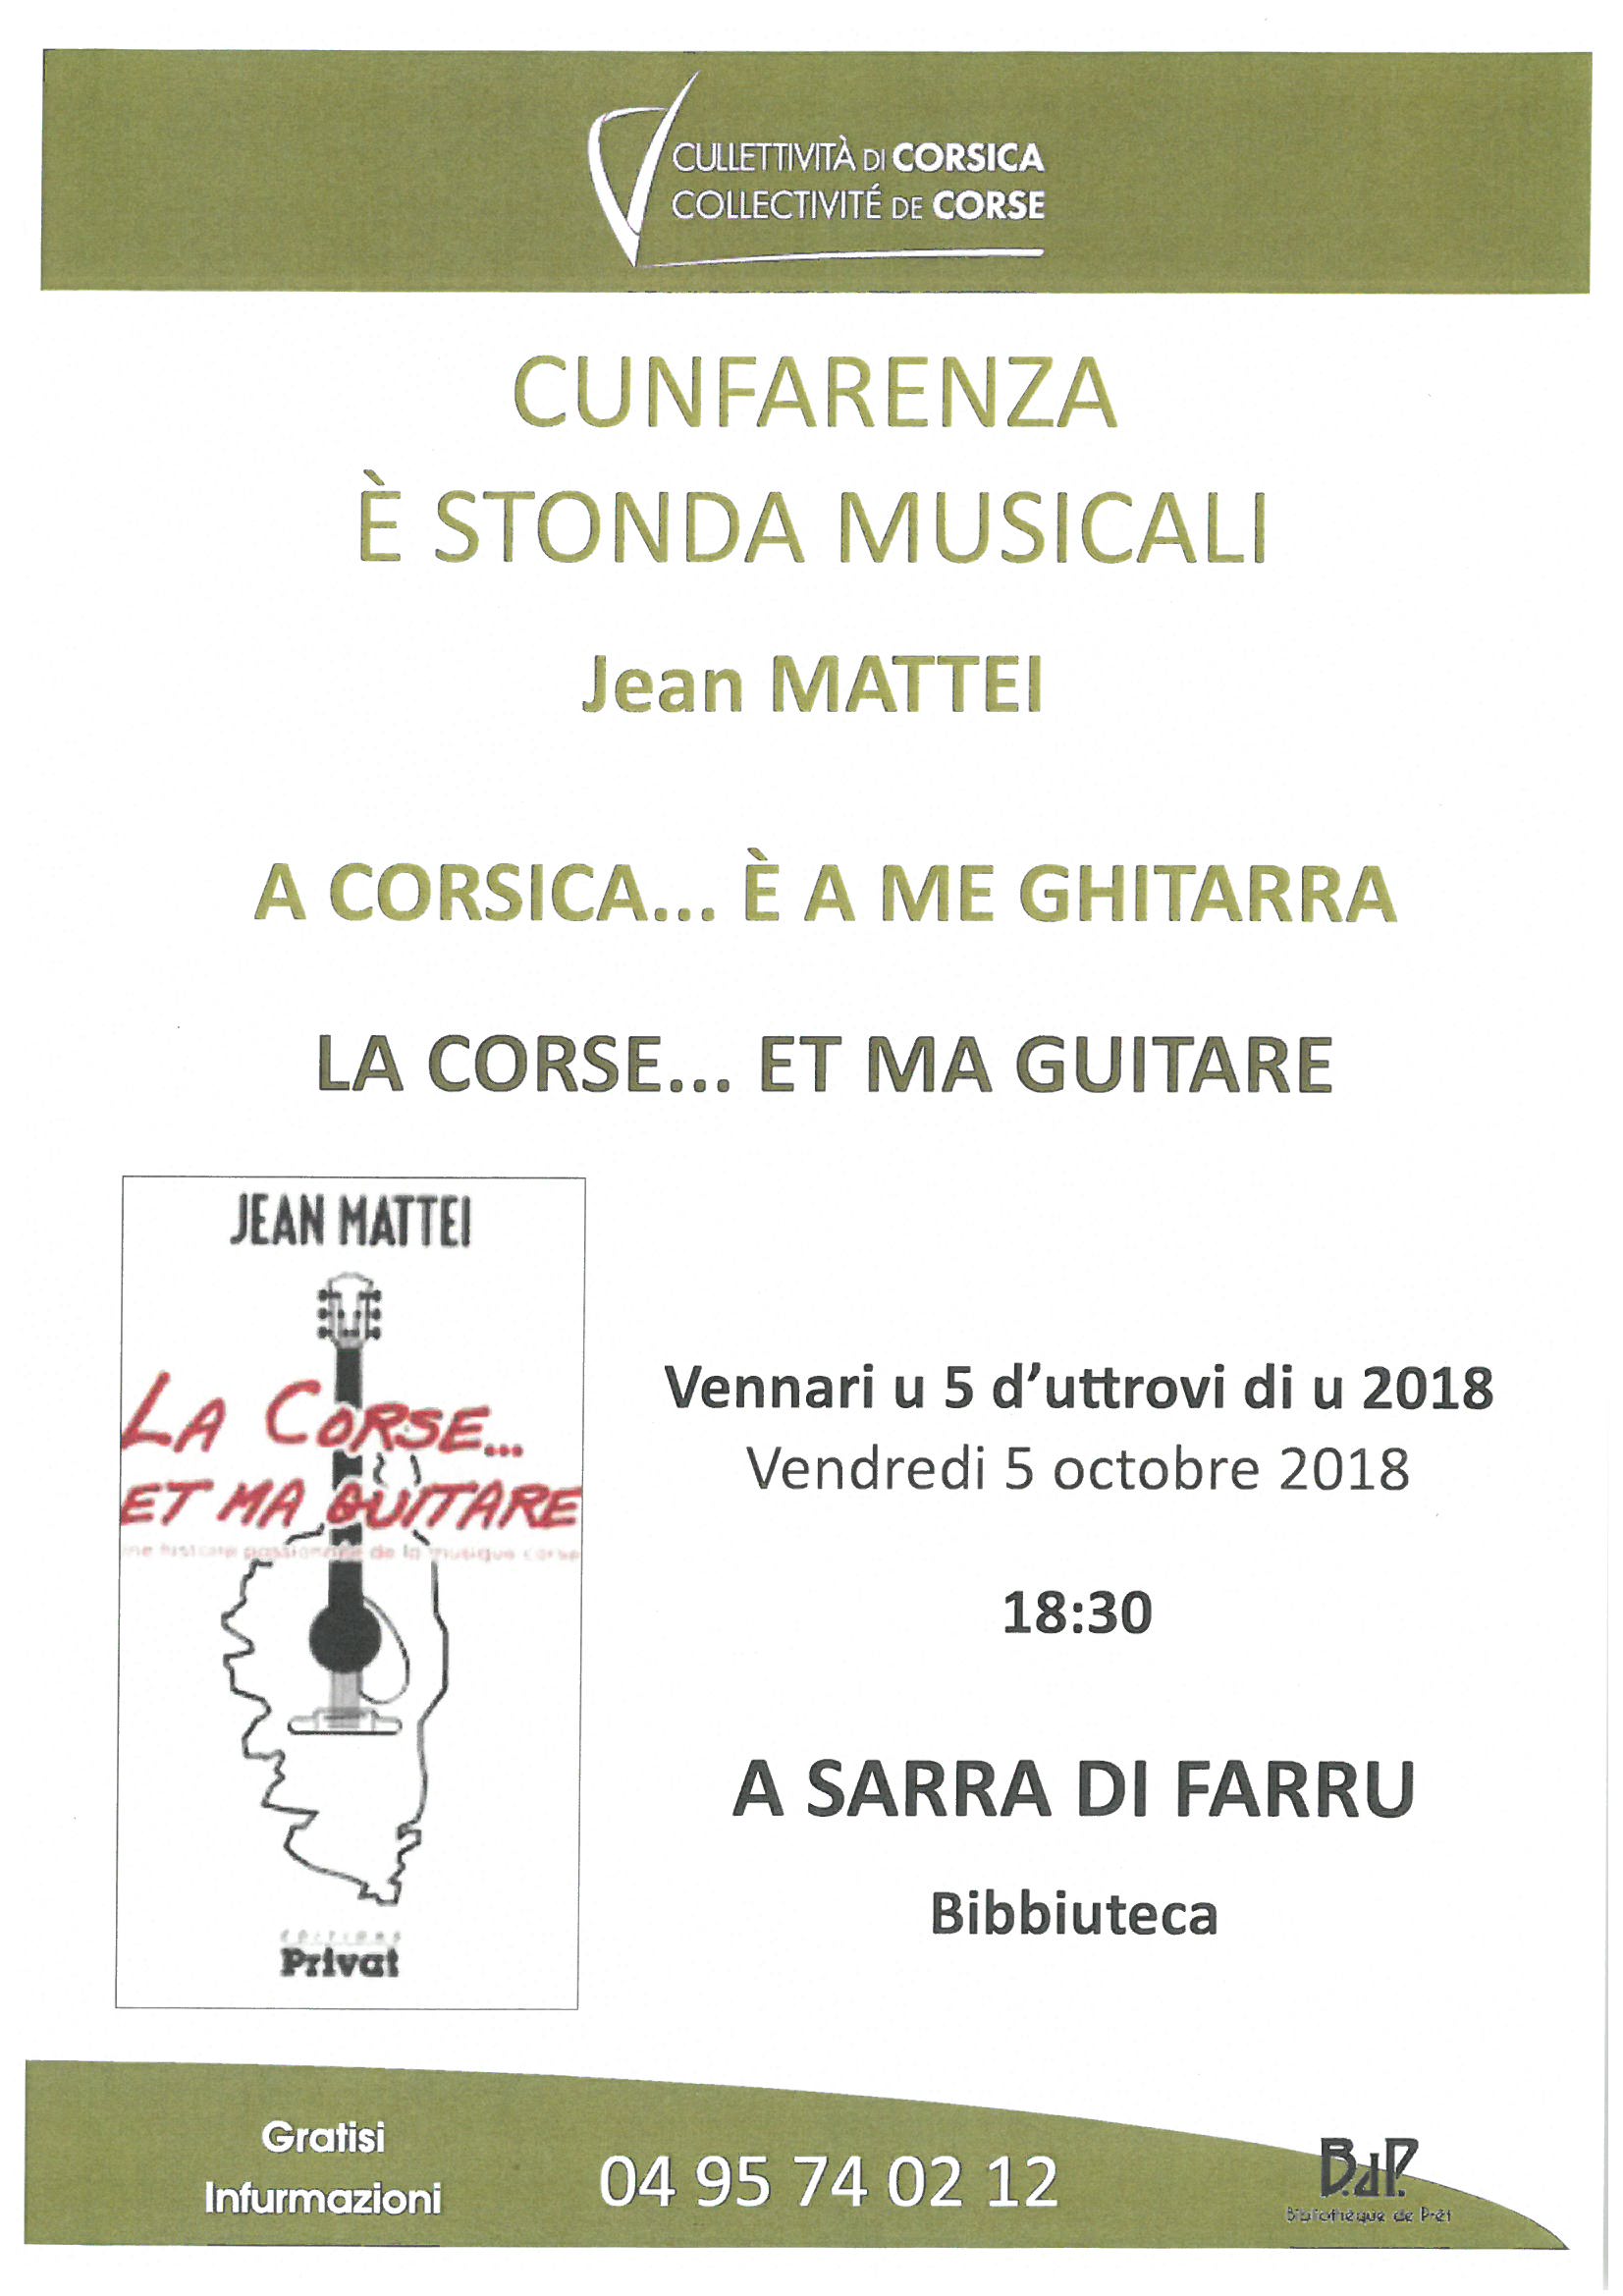 Conférence et moment musical "la Corse et ma guitare" de Jean Mattei